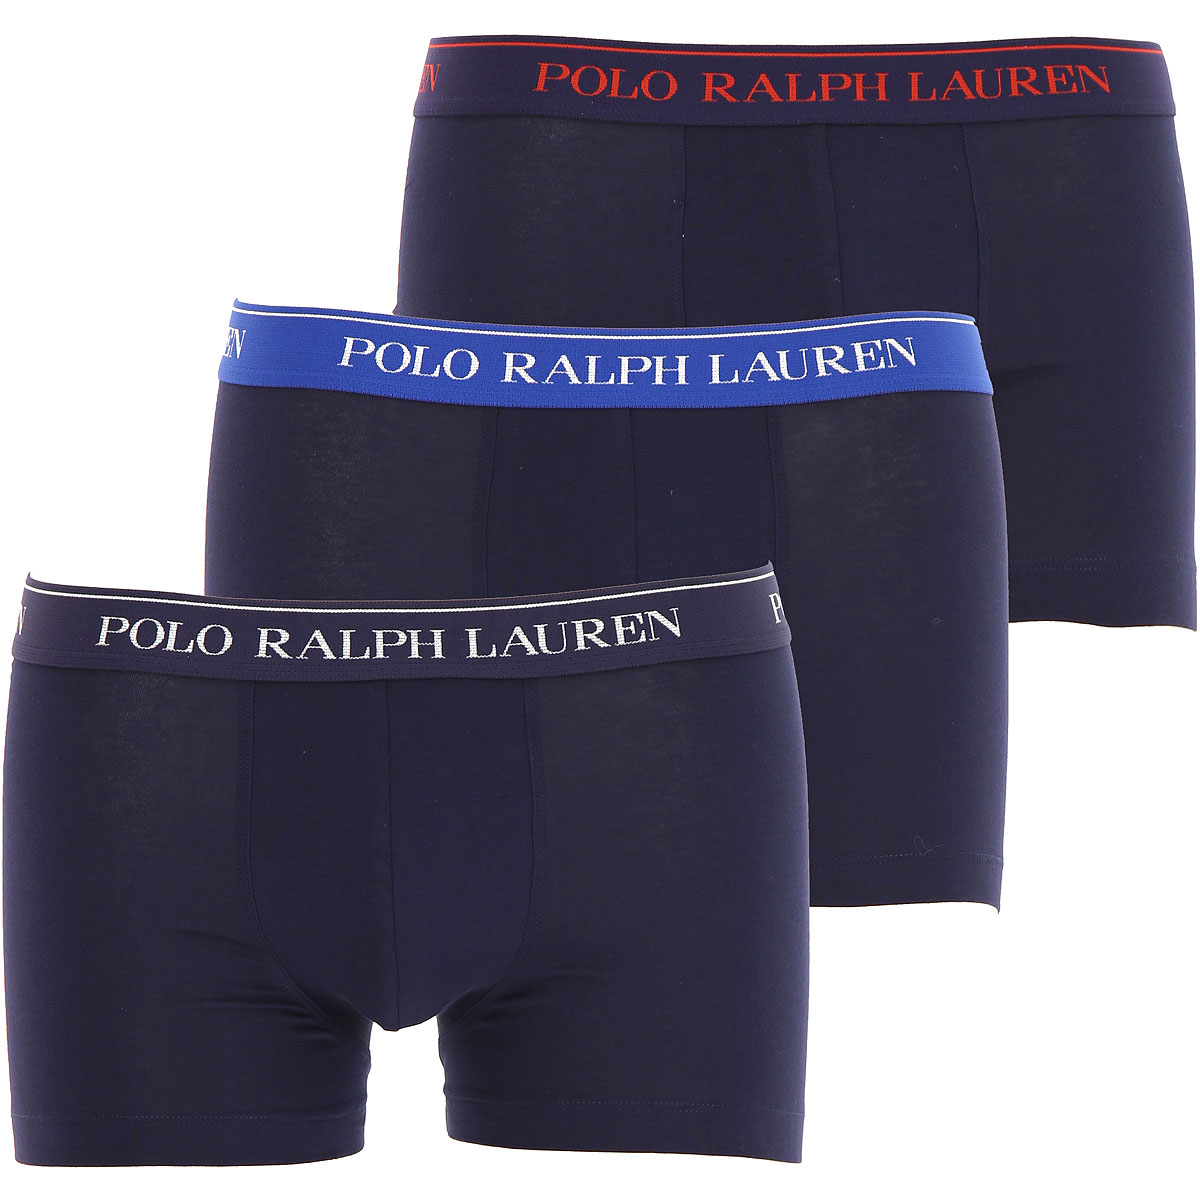 Ralph Lauren Boxer Shorts für Herren, Unterhose, Short, Boxer Günstig im Sale, 3 Pack, Marineblau, Baumwolle, 2017, L M S XL